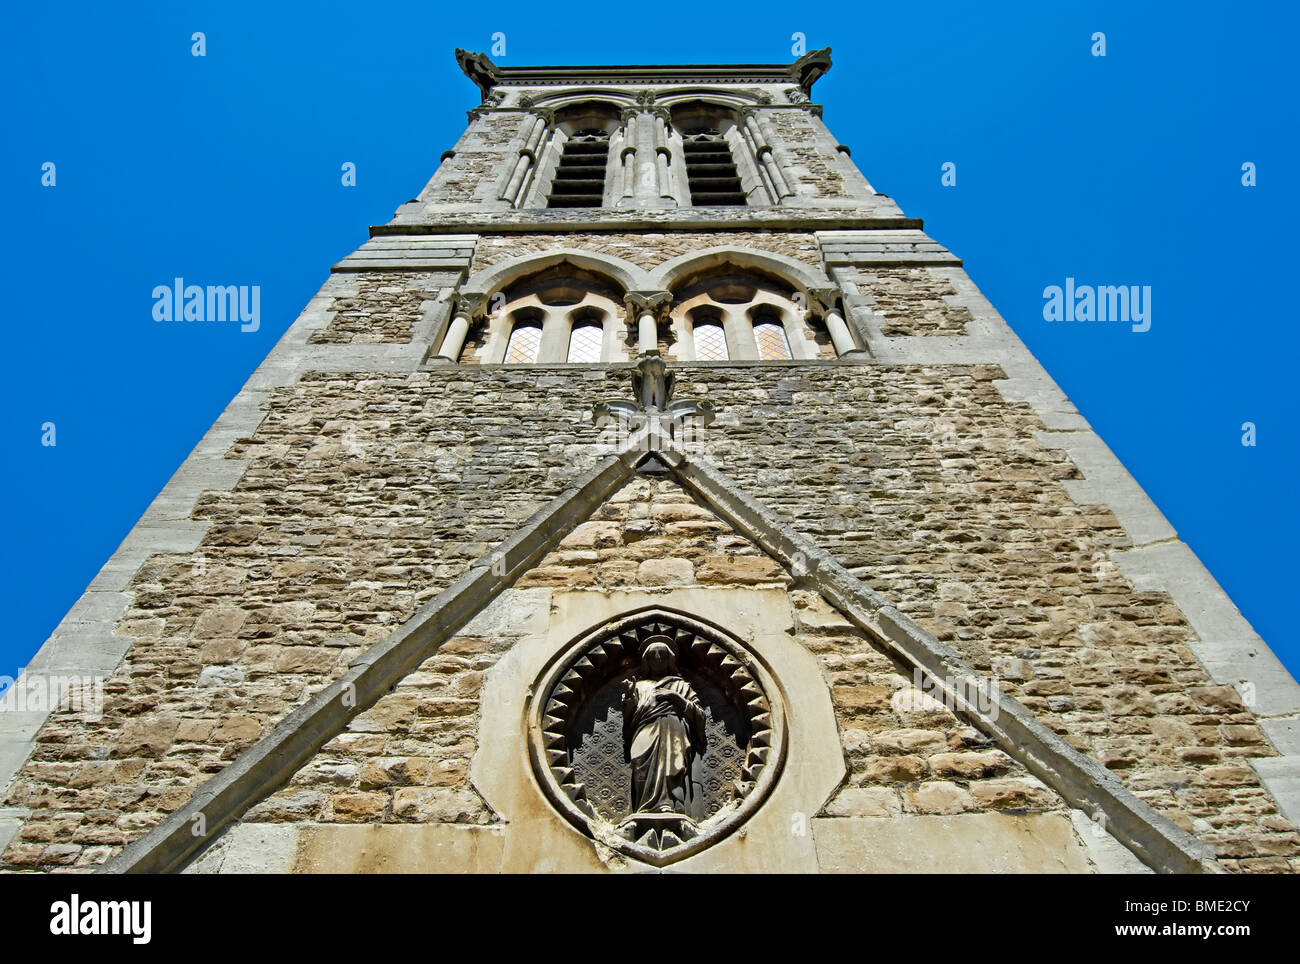 La tour de pierre de l'Église du Christ, à l'est sheen, Surrey, Angleterre, église achevée dans les années 1860 et conçu par sir Arthur blomfield Banque D'Images